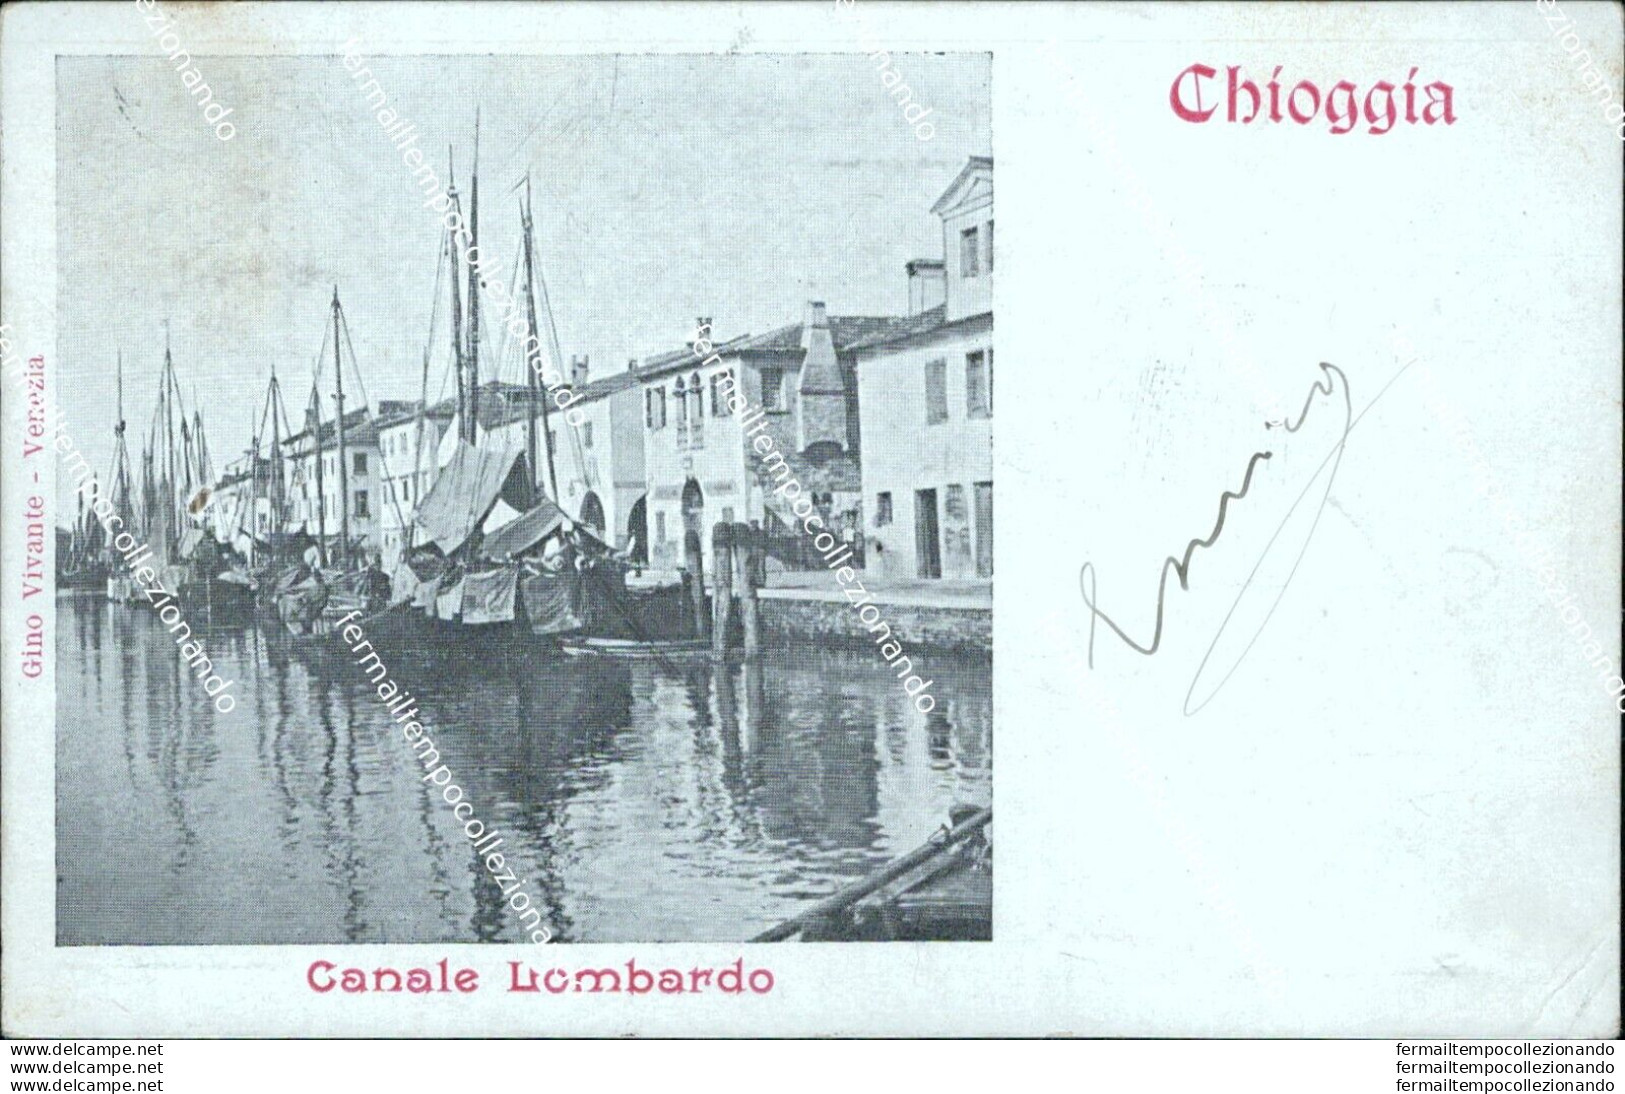 As604 Cartolina Chioggia Canale Lombardo Venezia - Venetië (Venice)